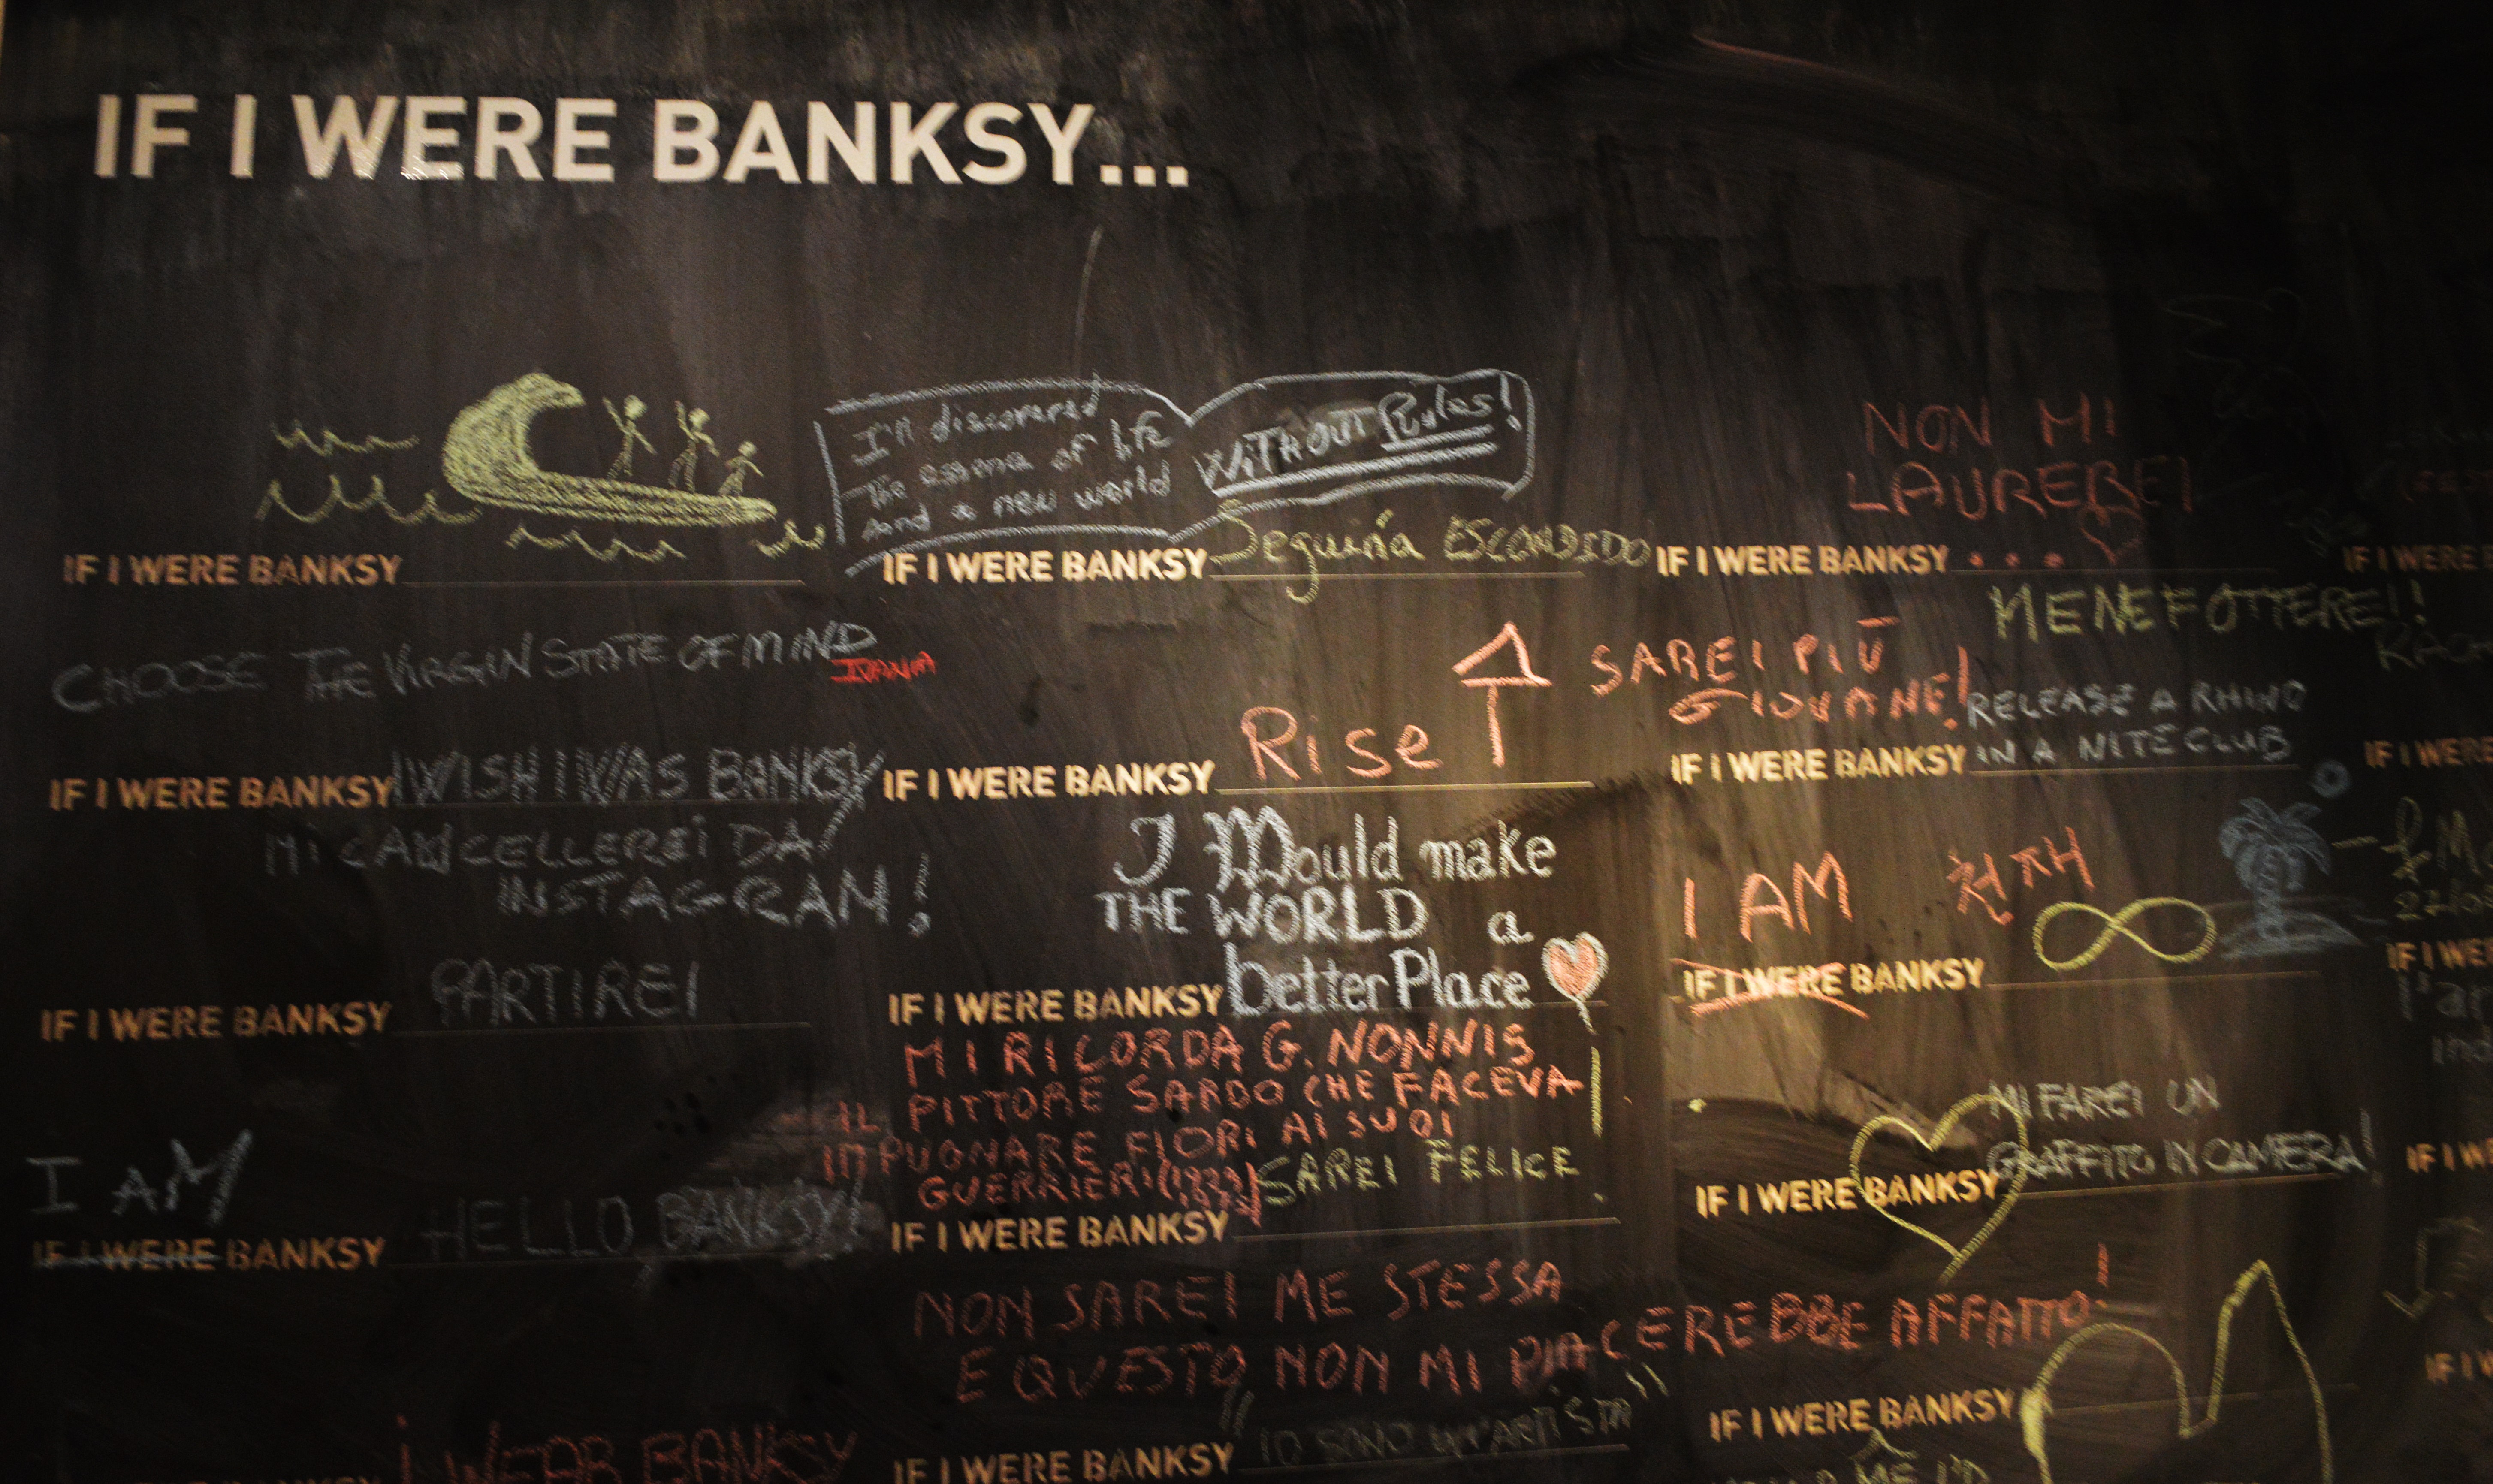 Banksy - War, Capitalism & Liberty (zdroj: PK)